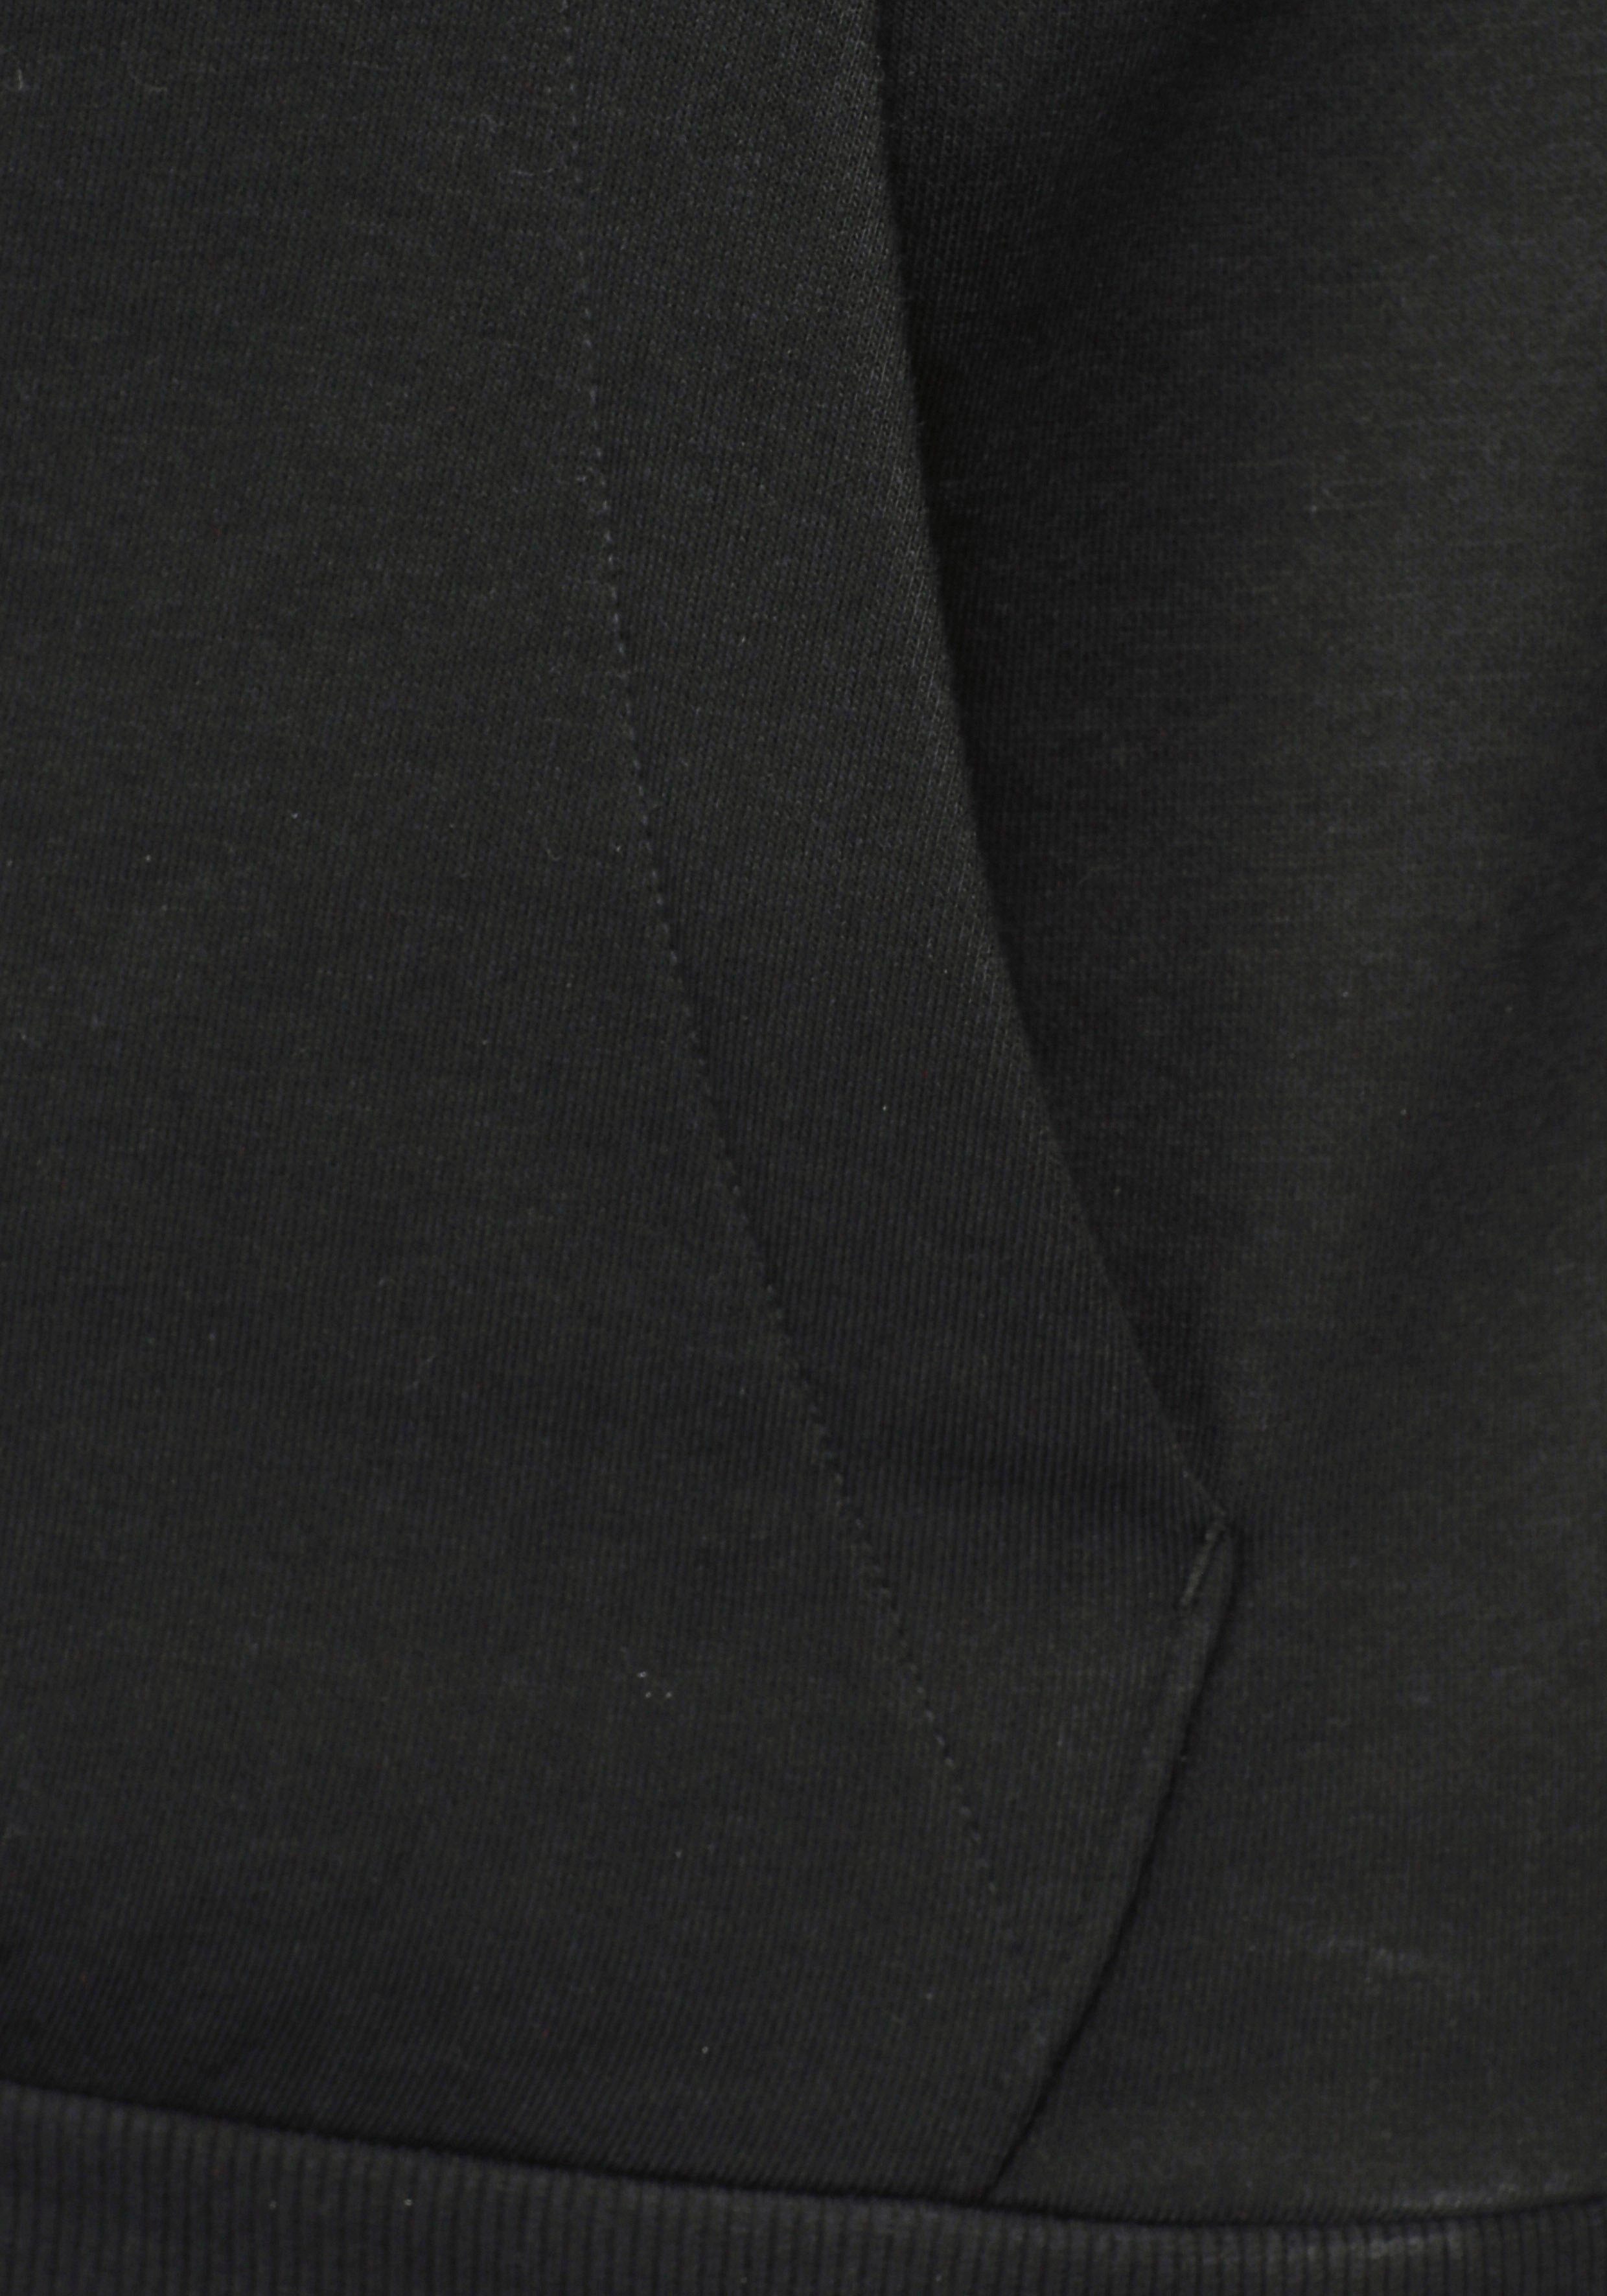 HOODIE adidas ESSENTIALS FLEECE White Sportswear Black Sweatshirt / 3STREIFEN